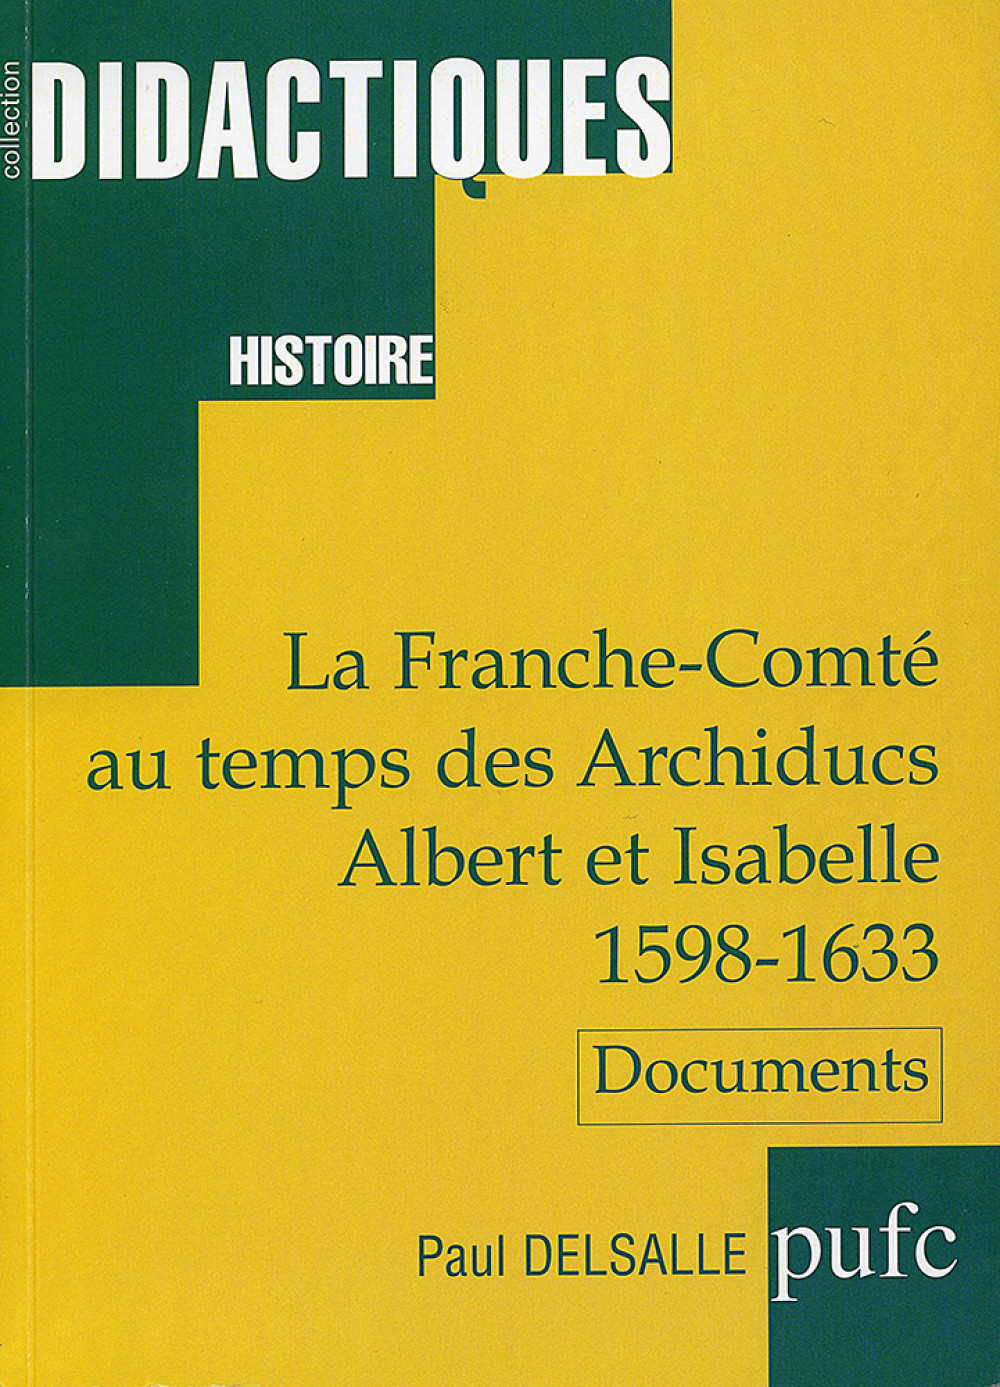 La Franche-Comté au temps des Archiducs Albert et Isabelle 1598-1633